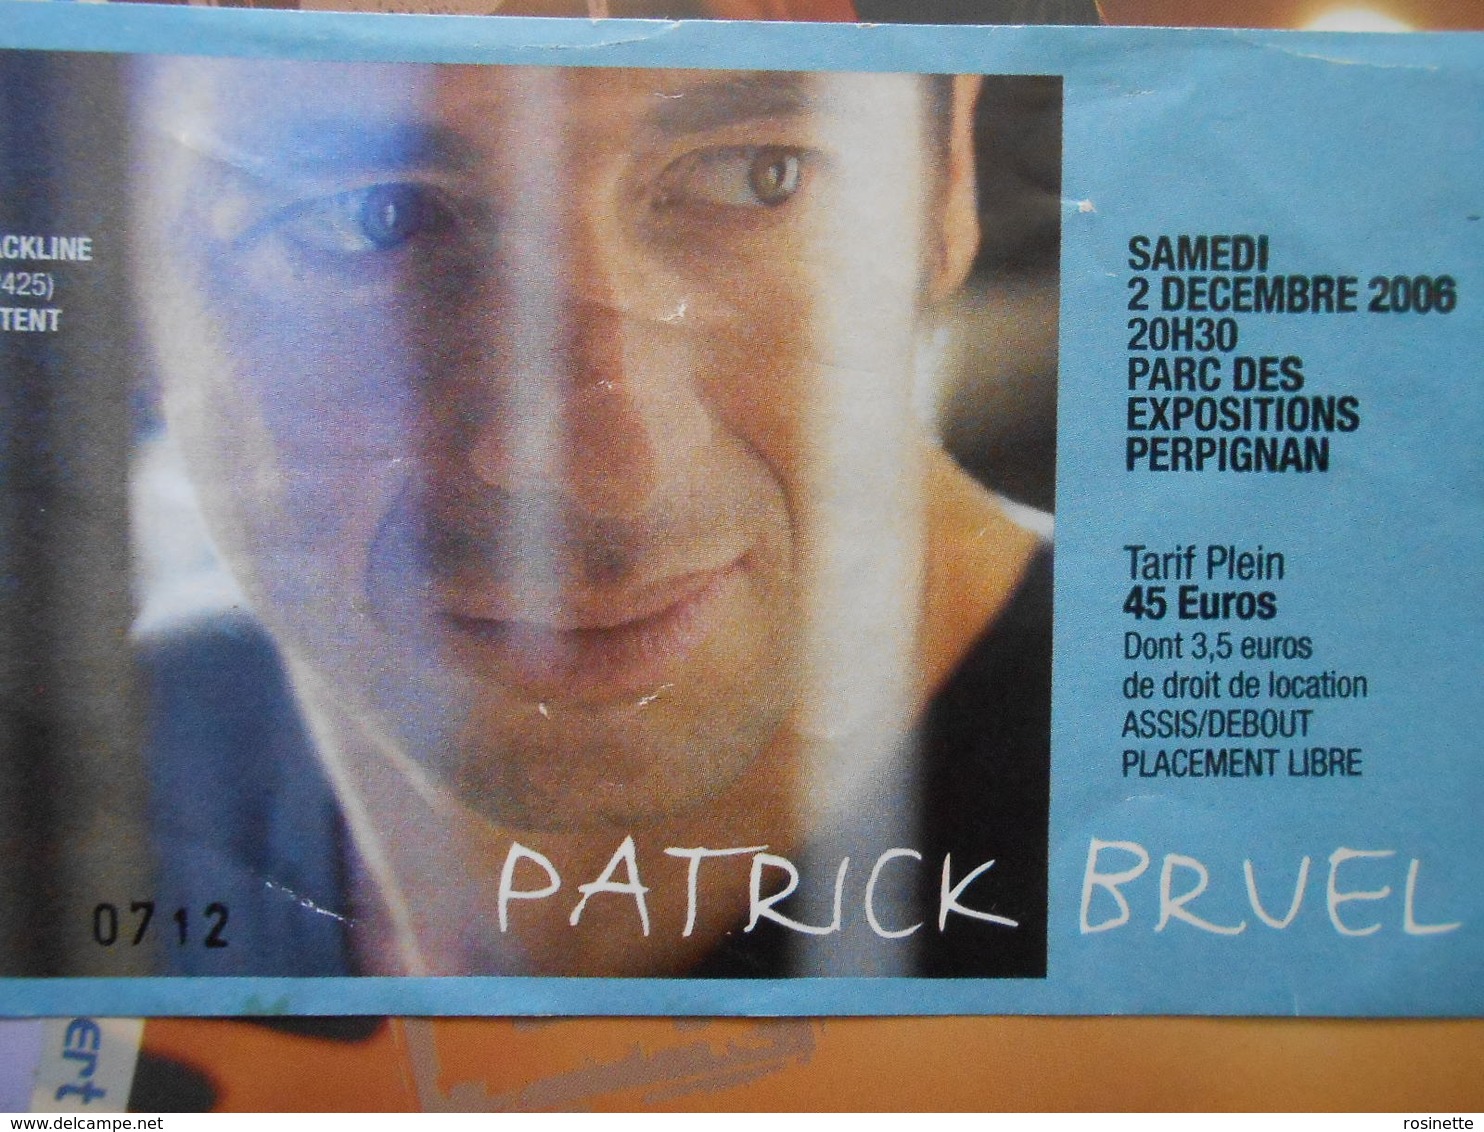 PATRICK BRUEL / TICKET DE CONCERT Perpignan 2006  + Carte CHERIE FM - Konzertkarten